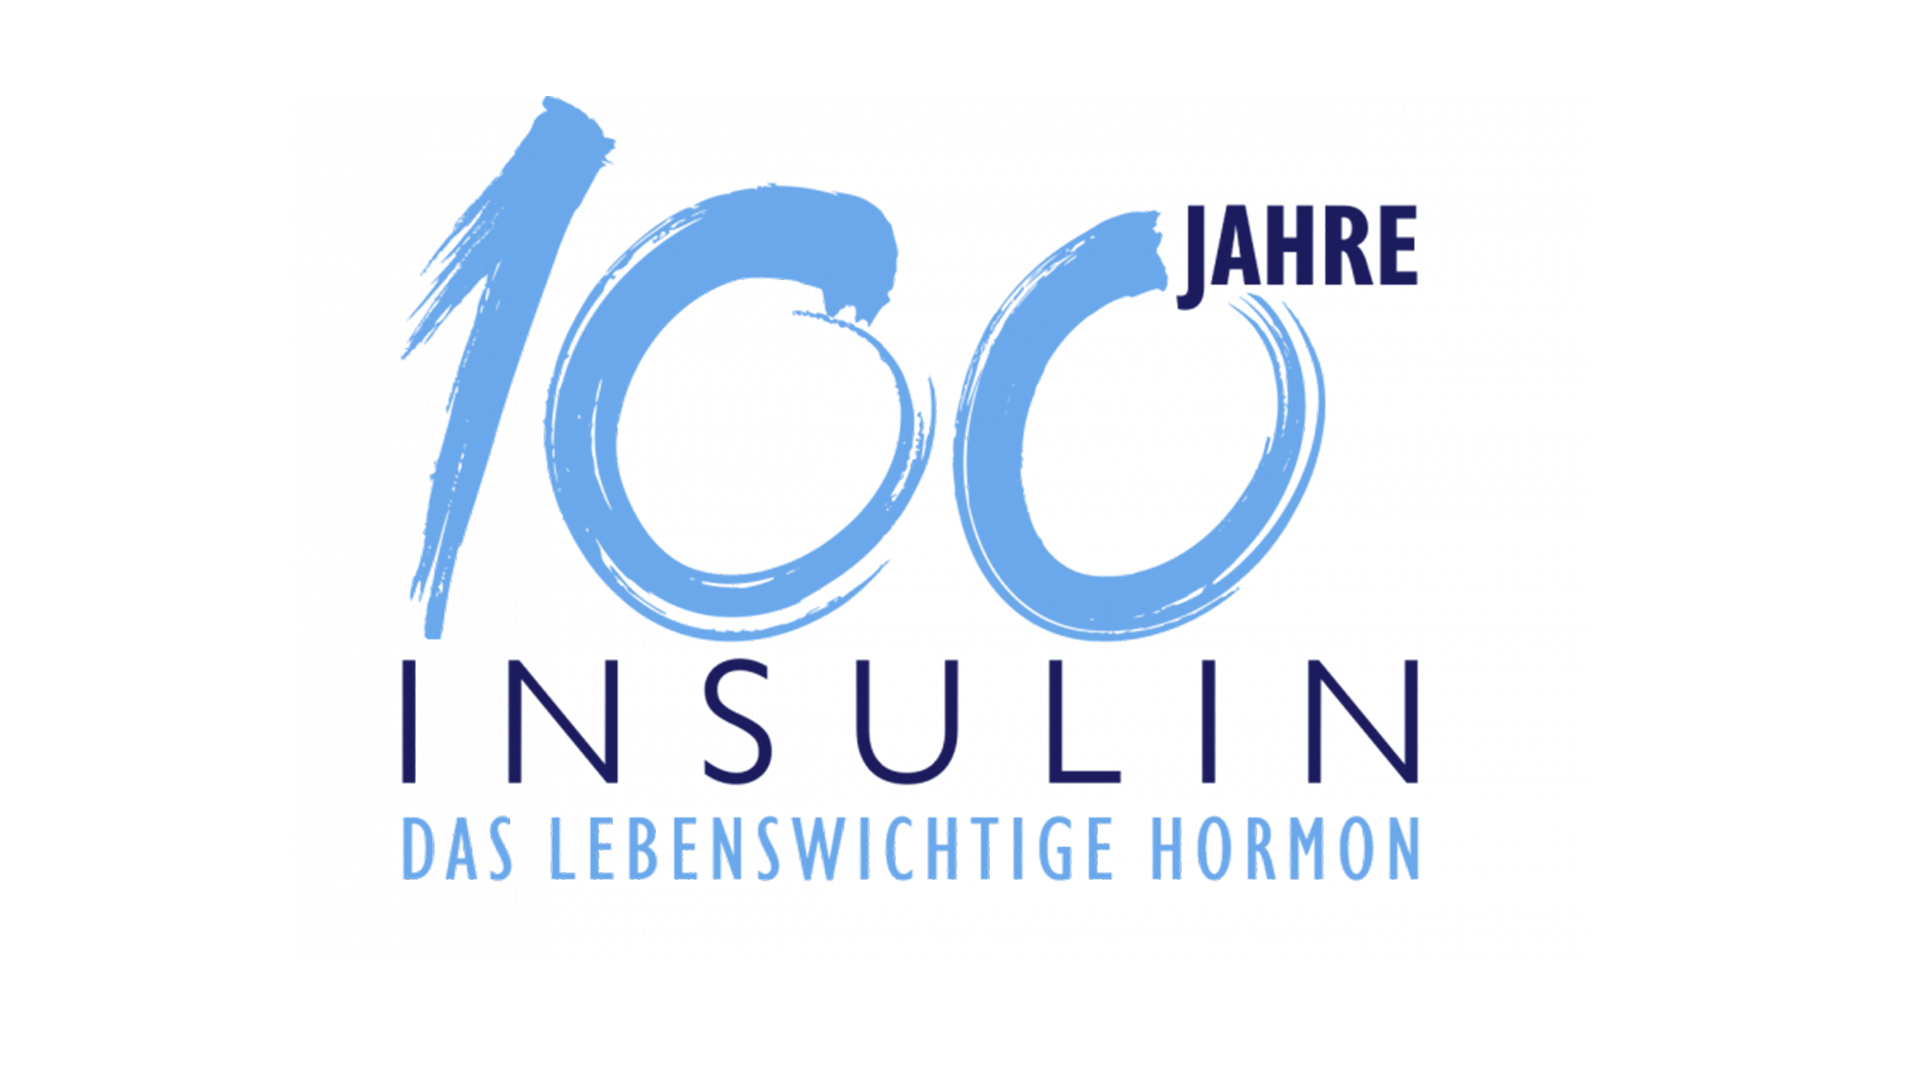 100 Jahre Insulin – Das lebenswichtige Hormon